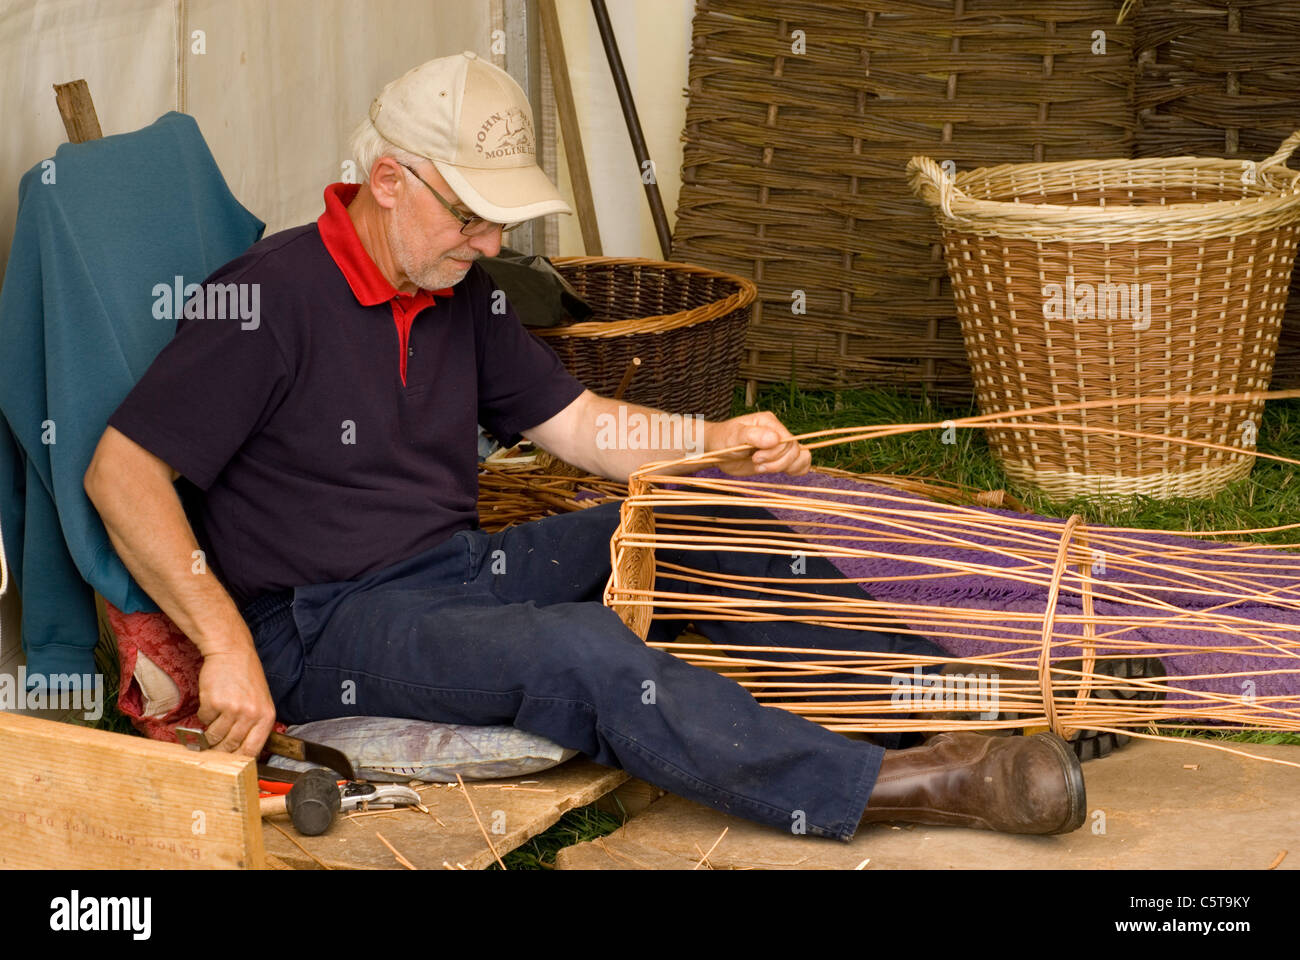 Basket weaver sitting constructing, UK Stock Photo